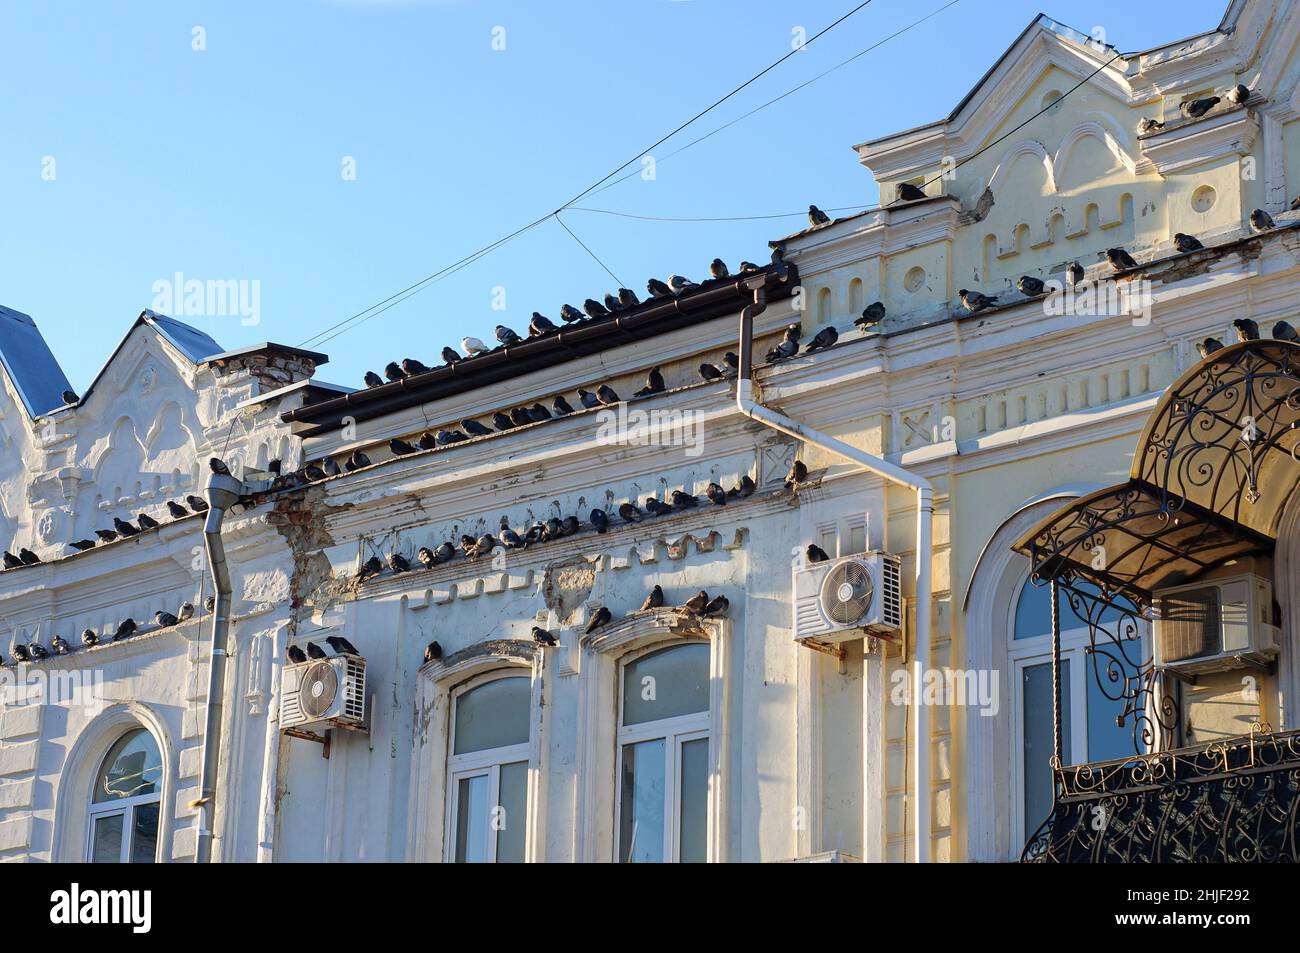 De nombreux pigeons sont installés sur la façade d'un ancien bâtiment du centre-ville.La destruction d'un monument architectural, des oiseaux, des conditions météorologiques. Banque D'Images